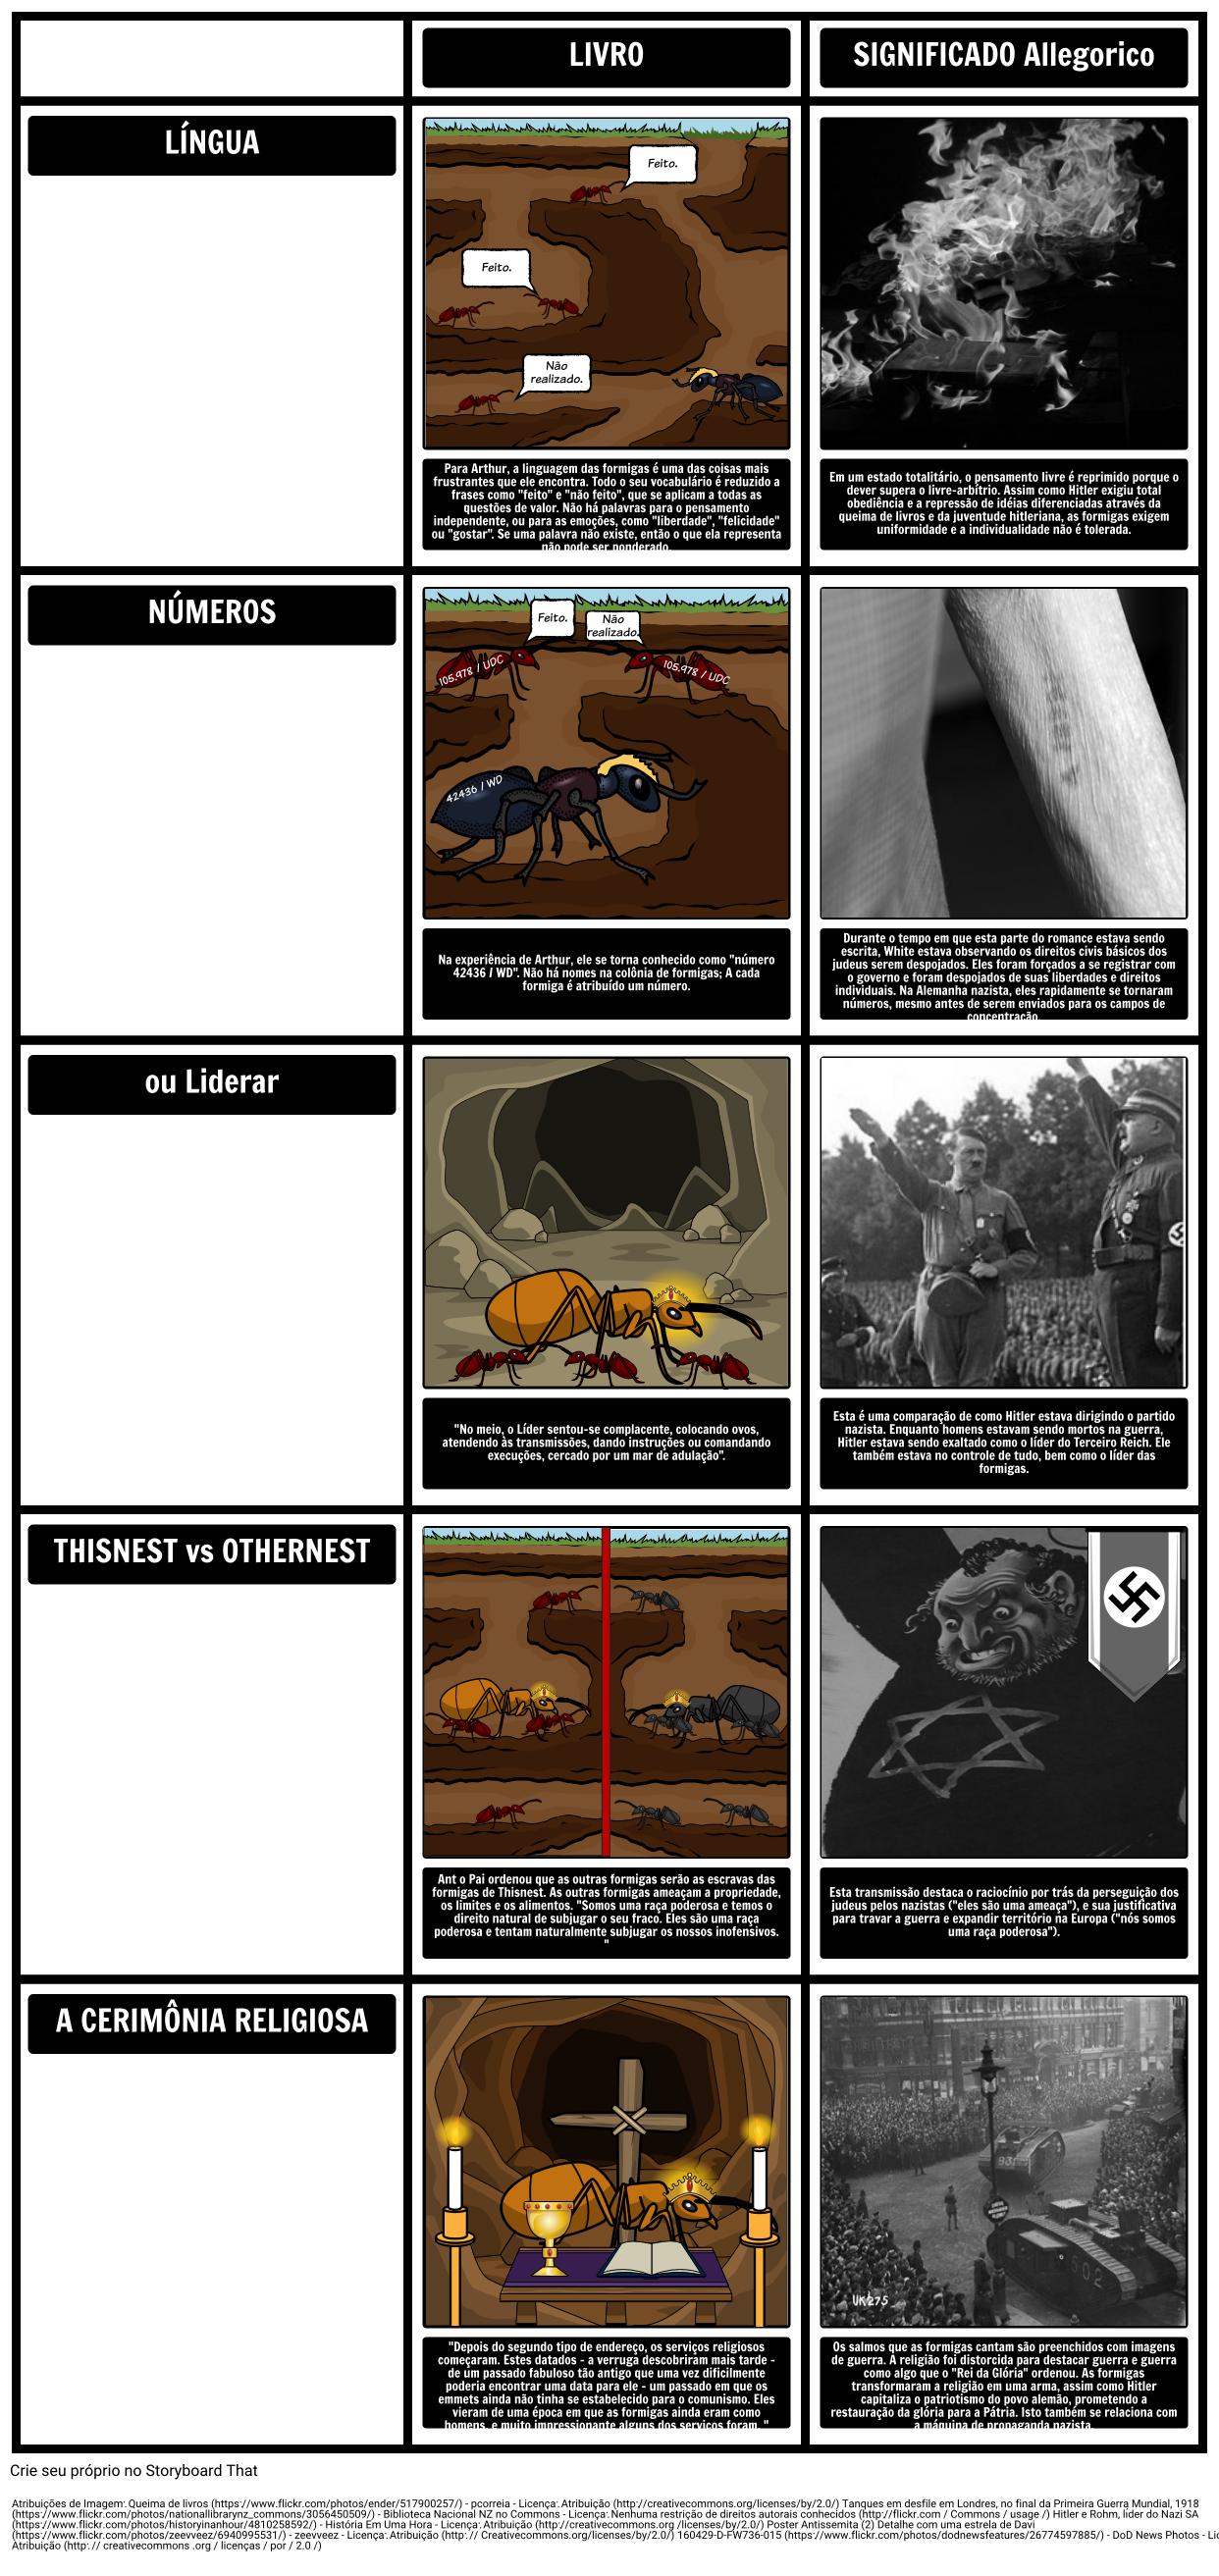 TOAFK - Alegoria na Lição das Formigas em "A Espada na Pedra"